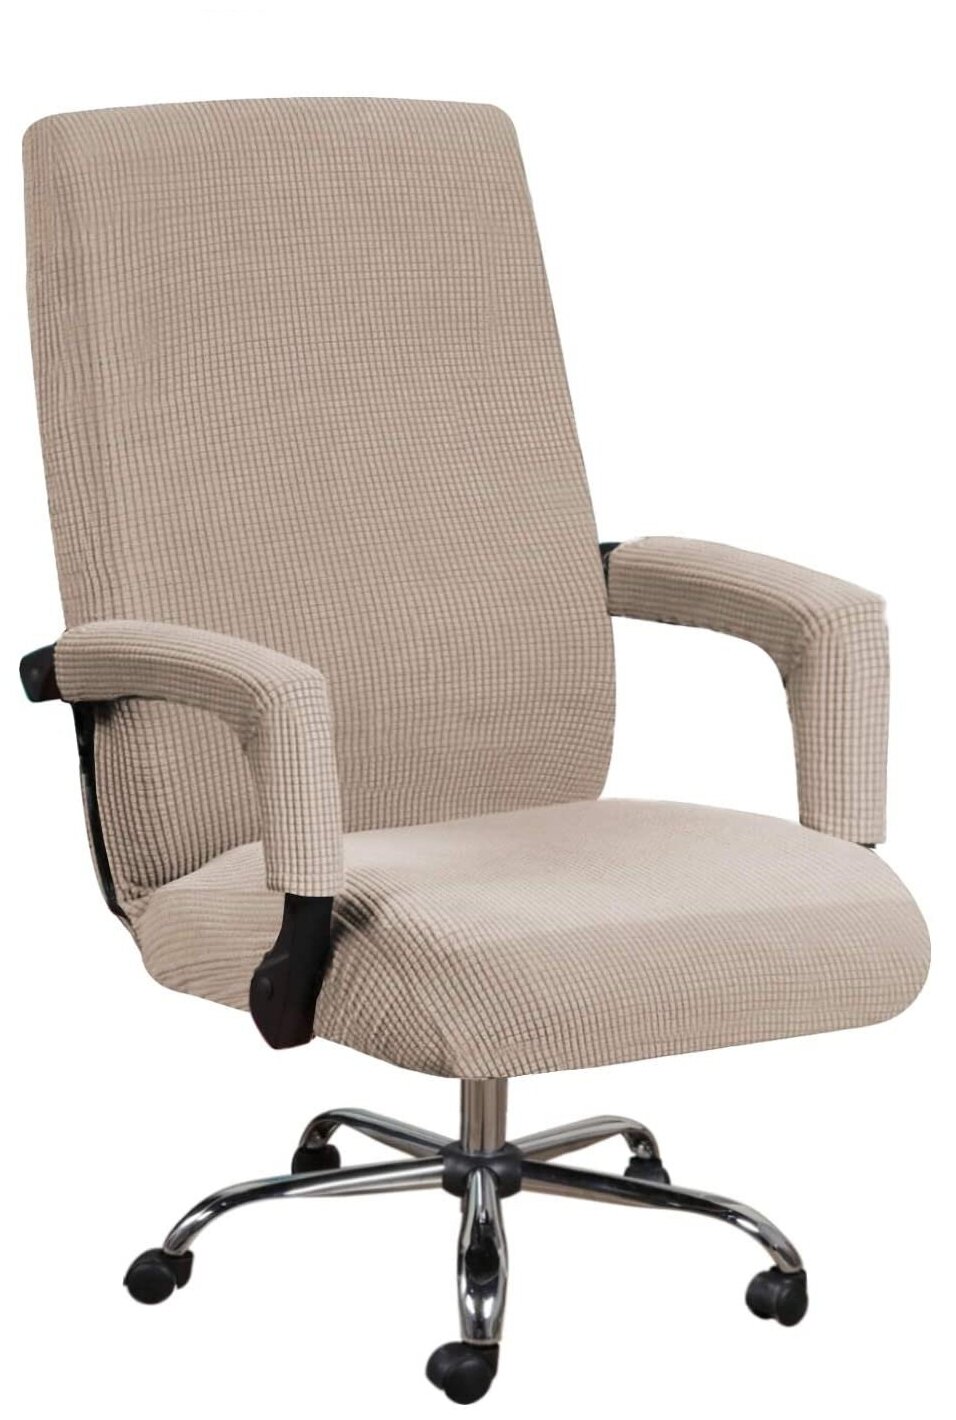 Чехол на стул компьютерное кресло Crocus-Life A7-Beige размер L цвет: бежевый